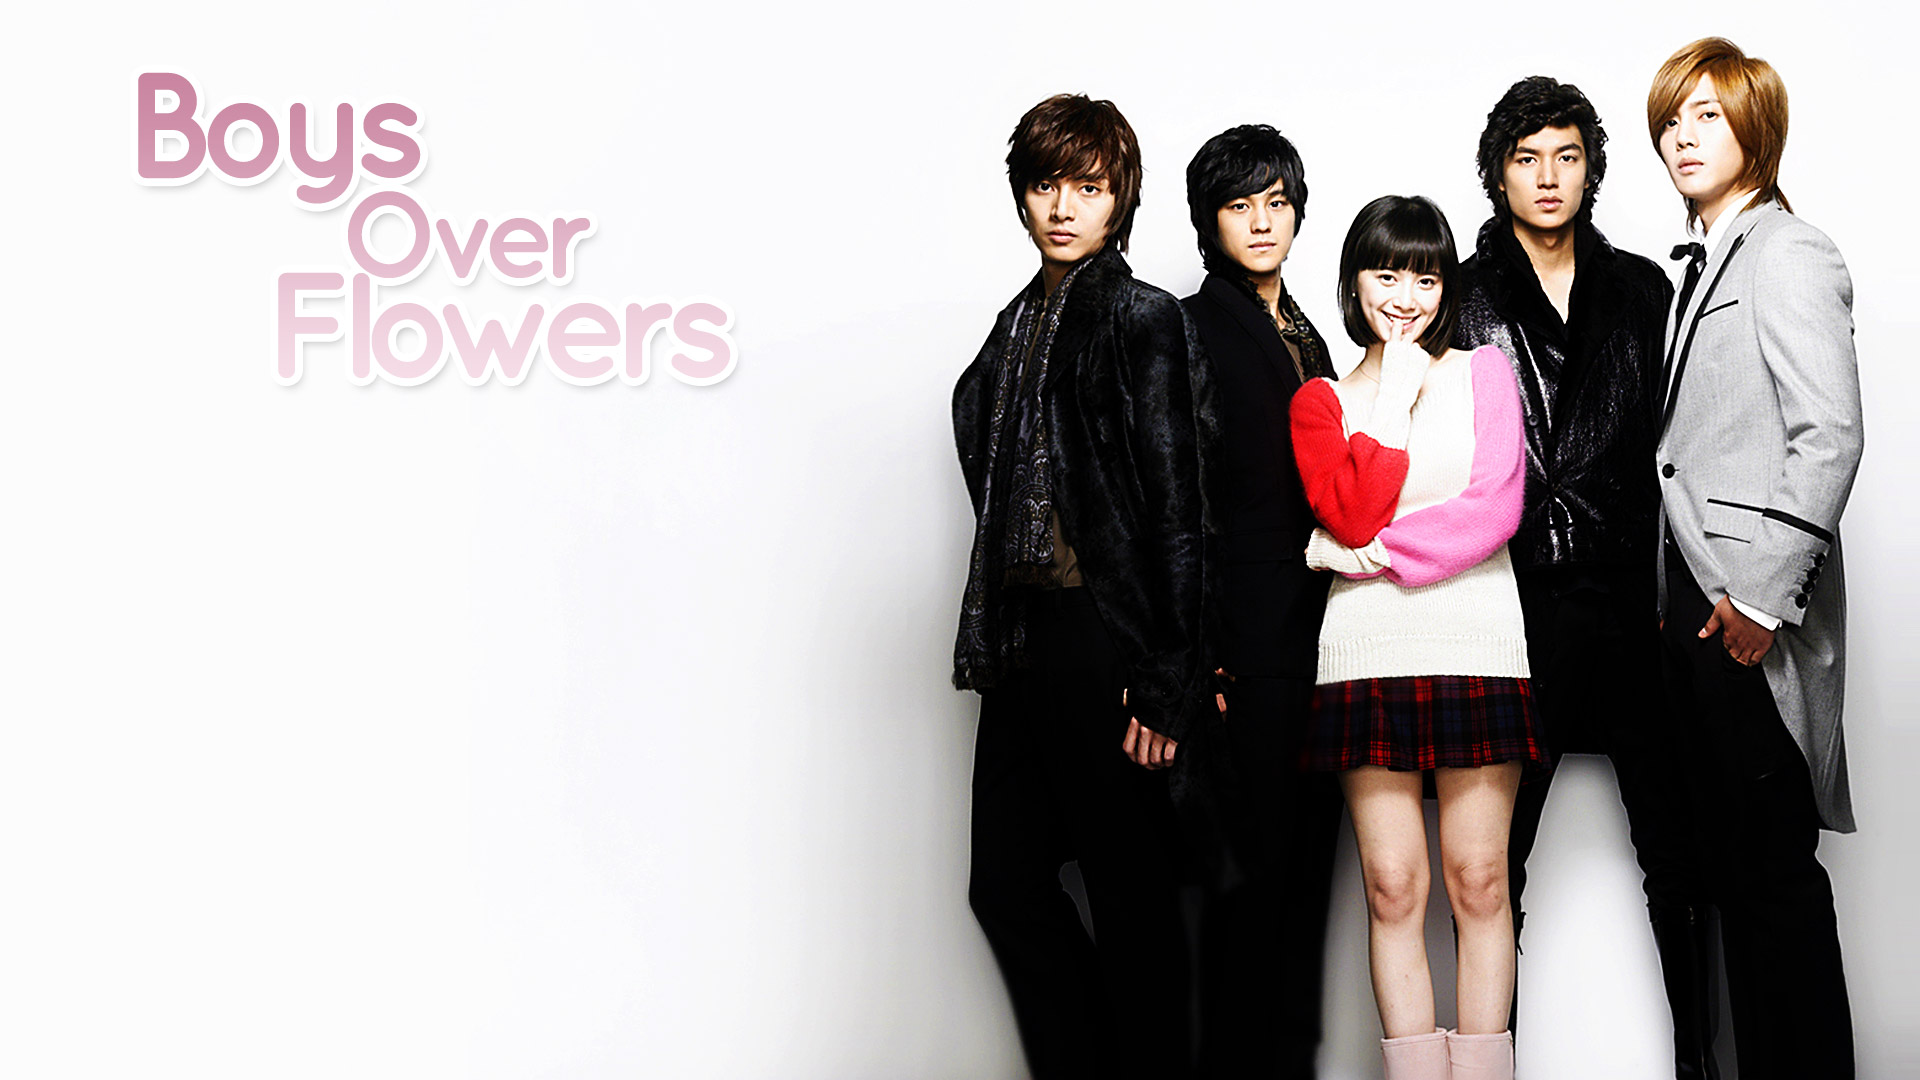 Boys over Flowers - Korean Dramas Wallpaper (32444328 ...